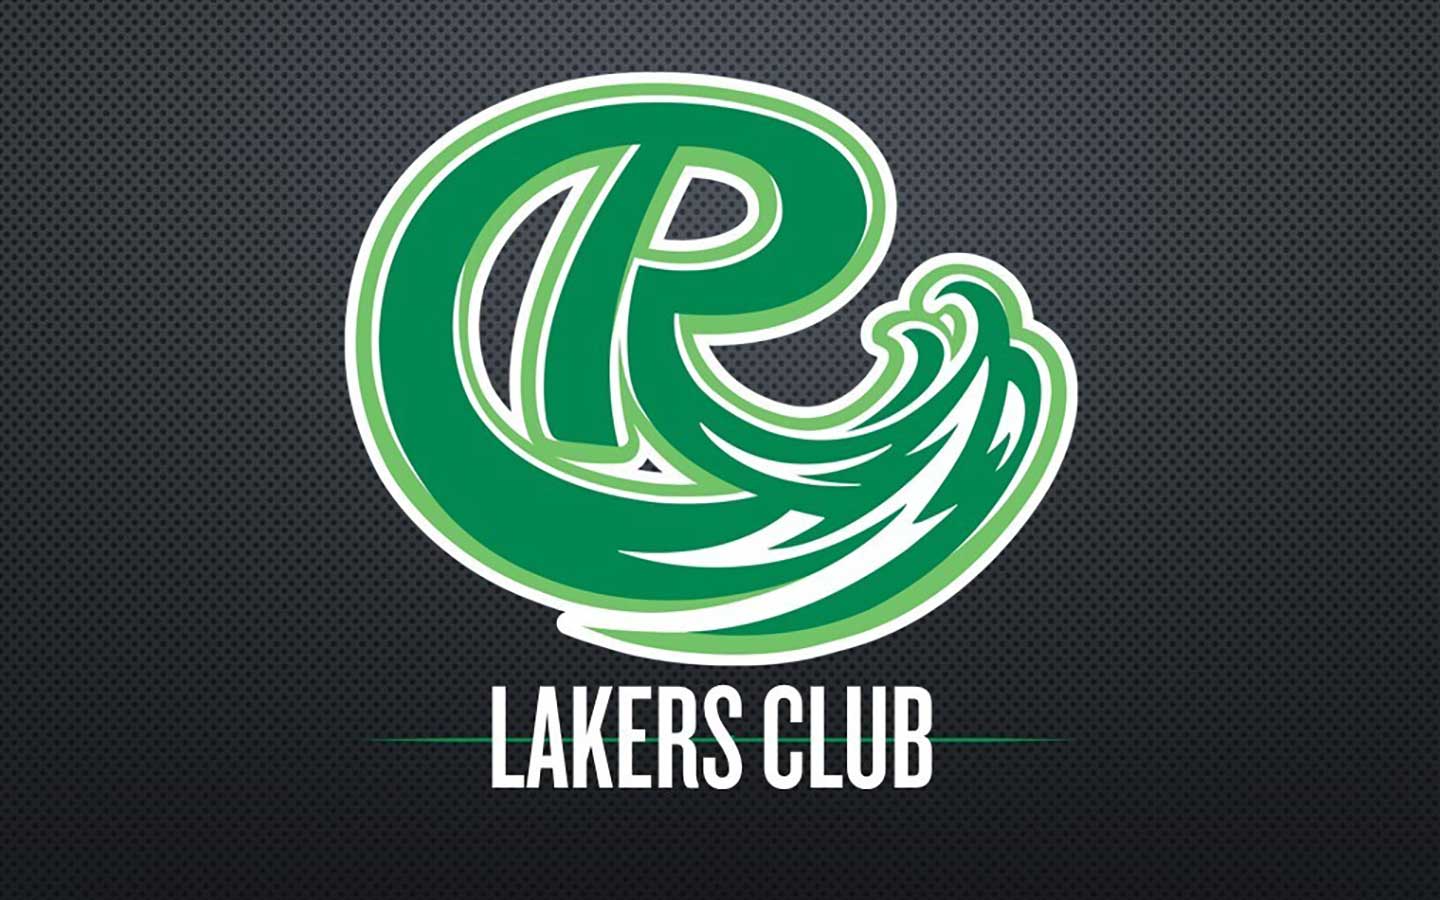 Lakers Club logo